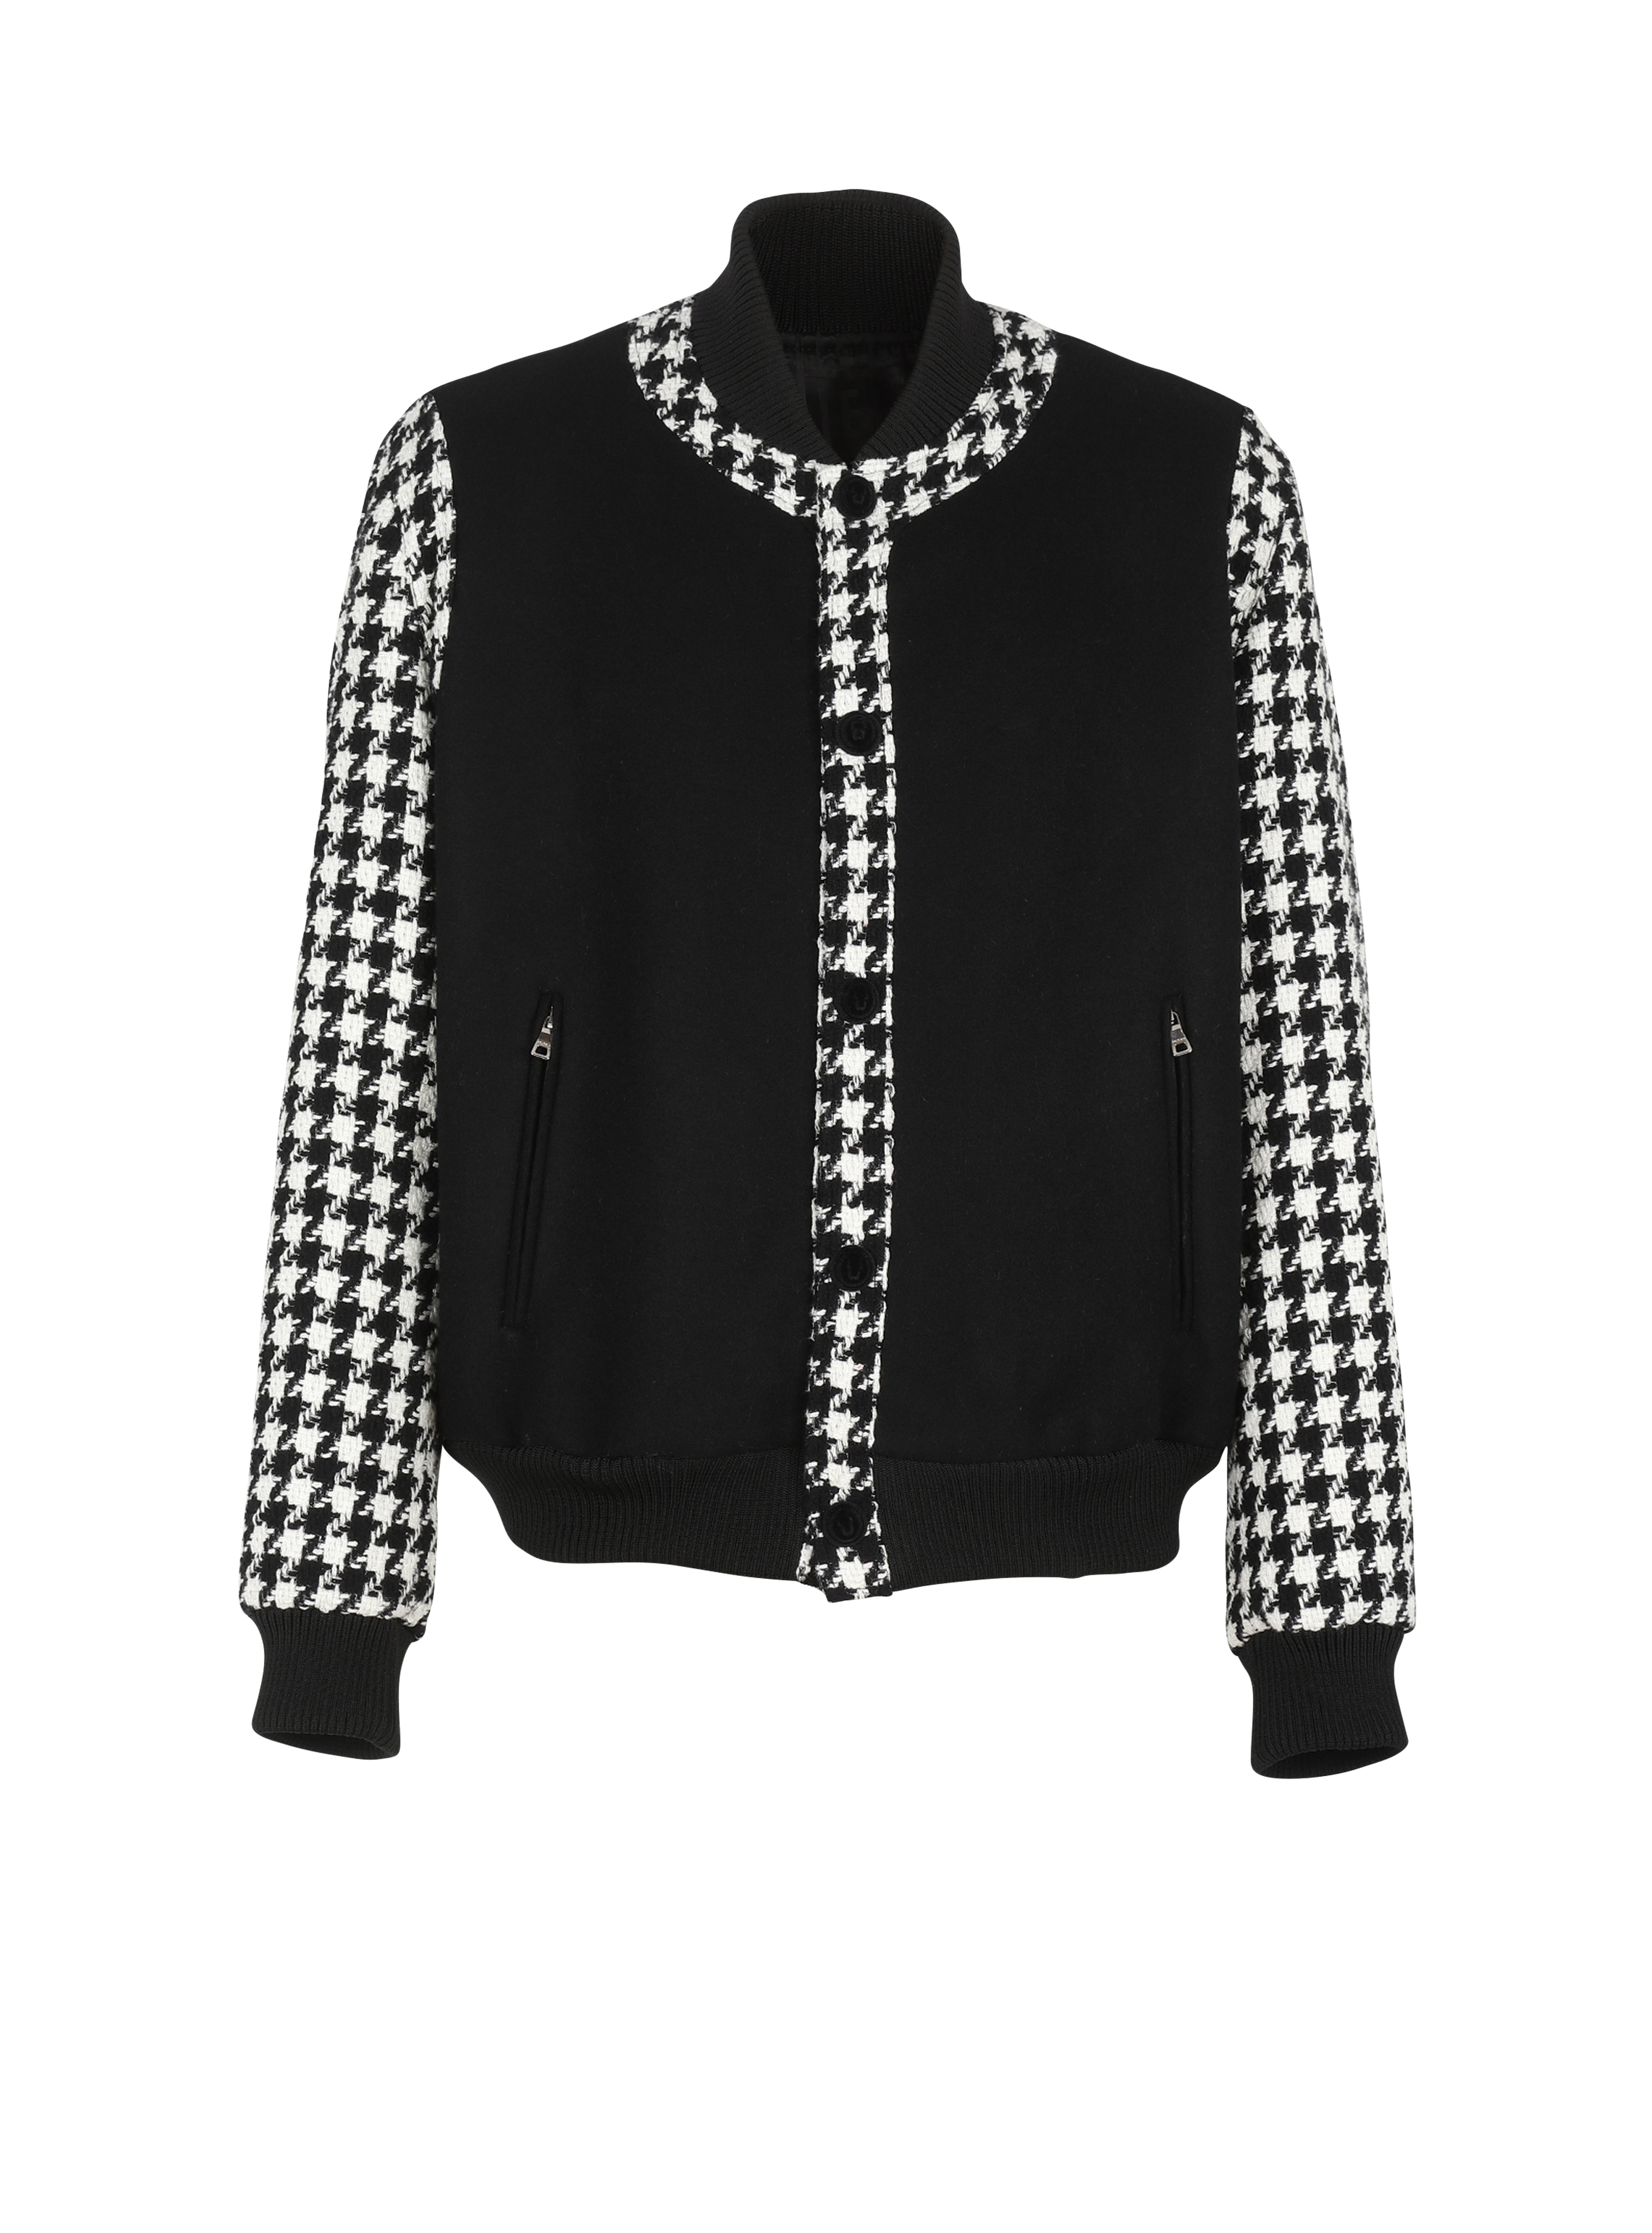 유니섹스 - 하운즈투스 패턴 디테일 보머 재킷, 검정색